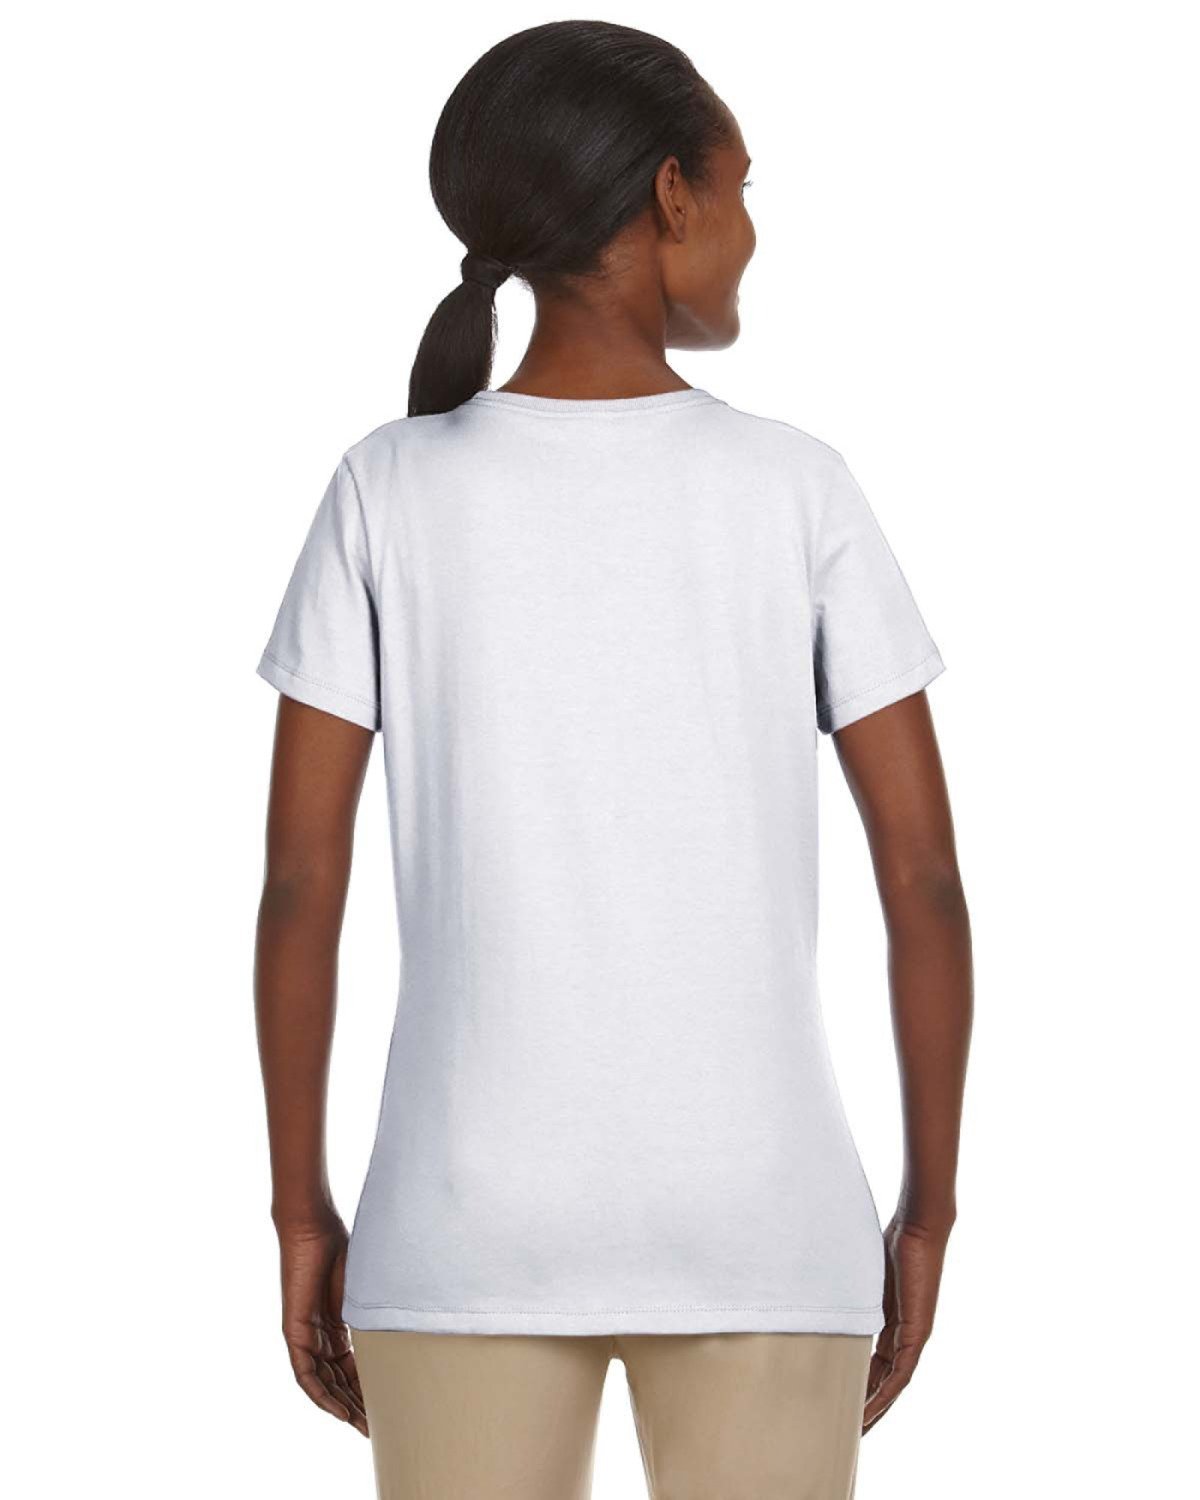 29WR-Jerzees-WHITE-Jerzees-T-Shirts-2